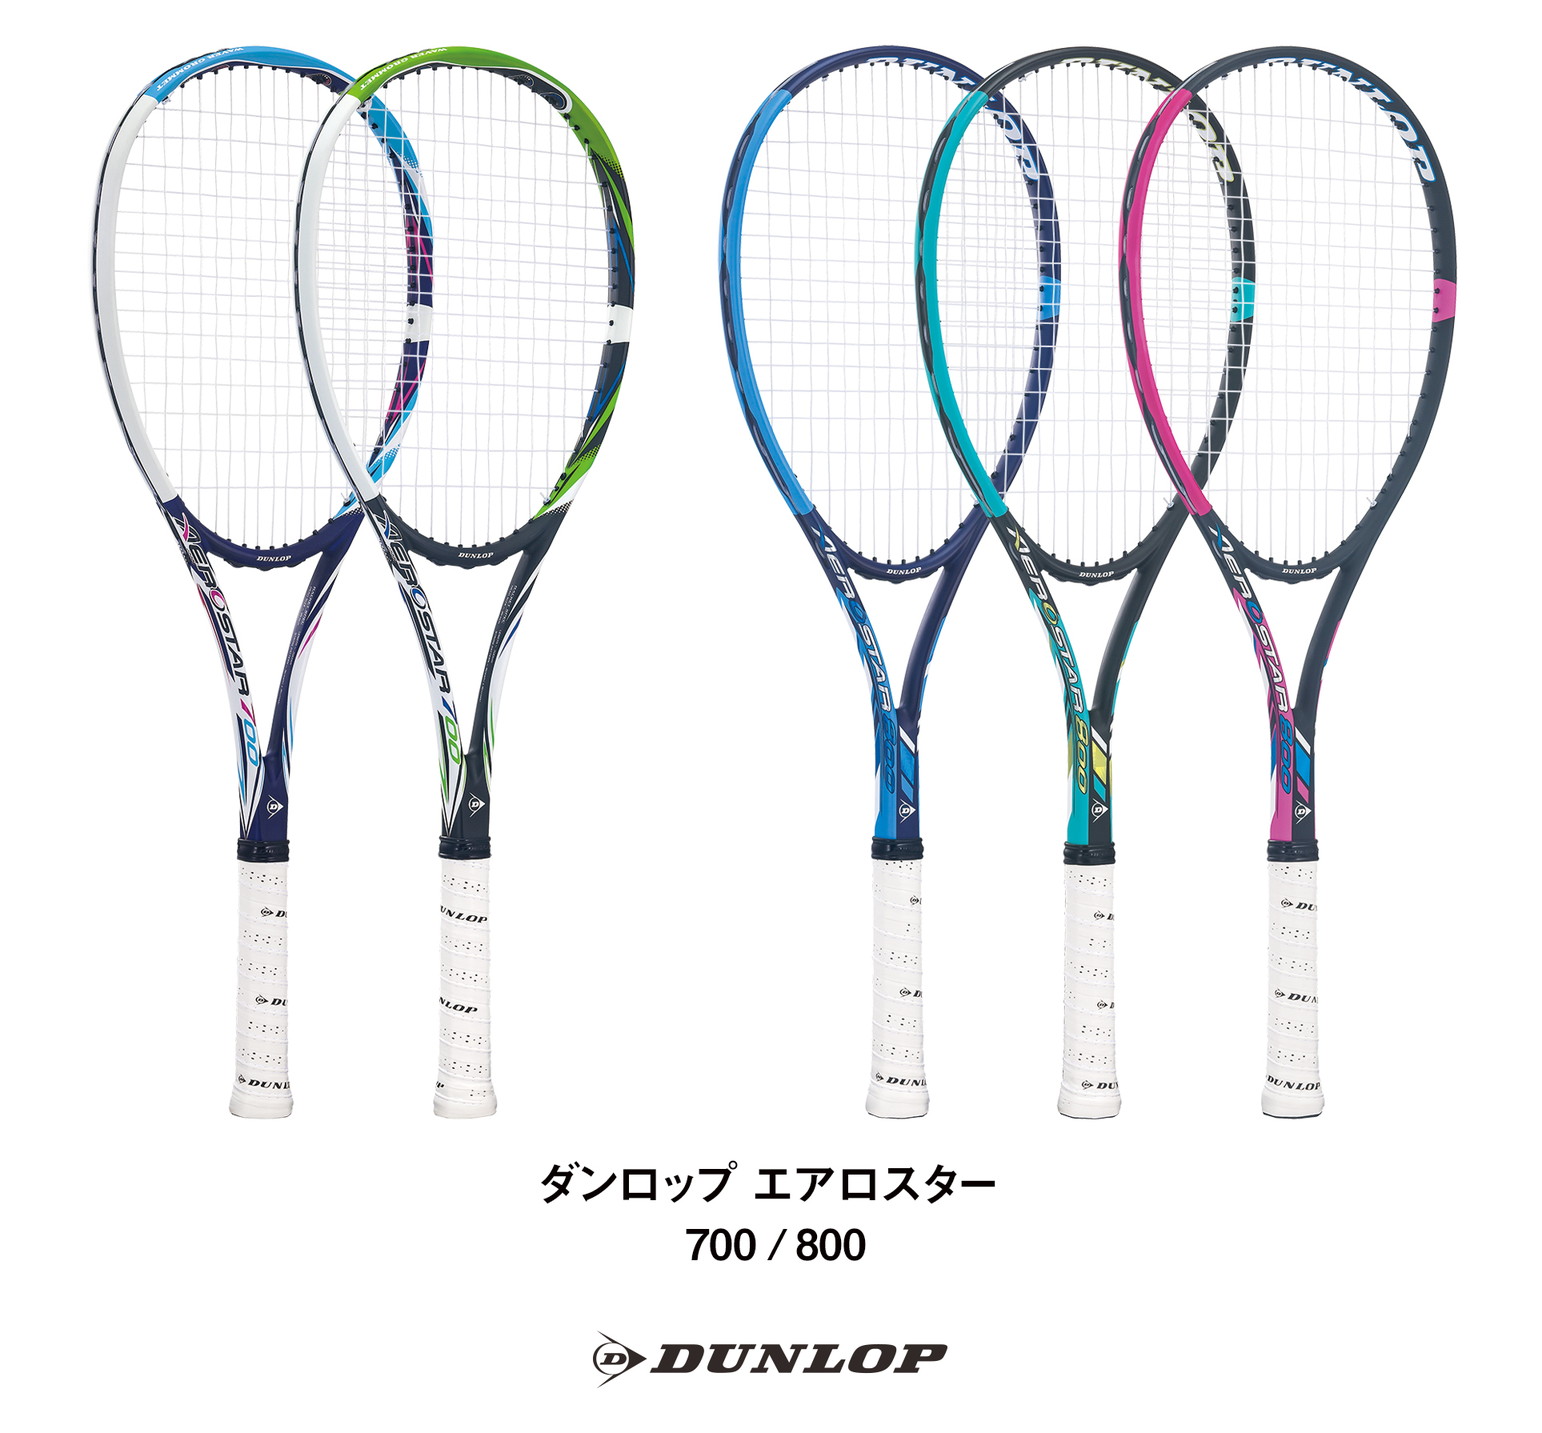 ソフトテニス入門ガイド【道具編】2021年新入生・ソフトテニスを始める 